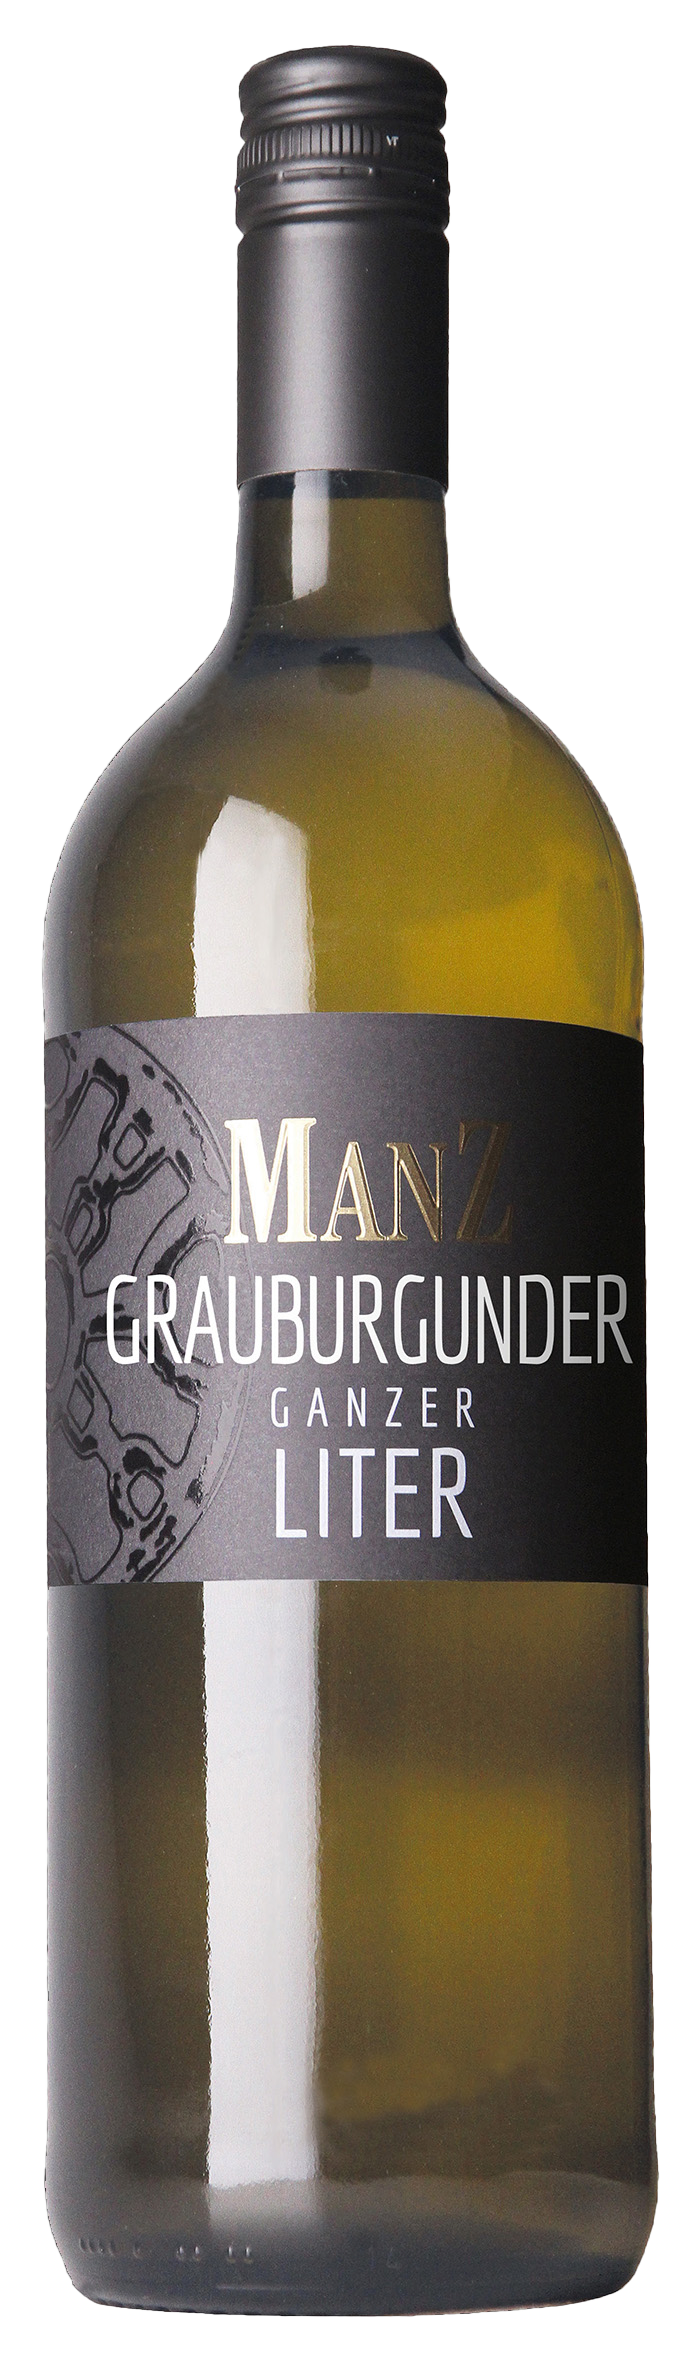 Manz Grauburgunder Liter Ganzer Rheinhessen